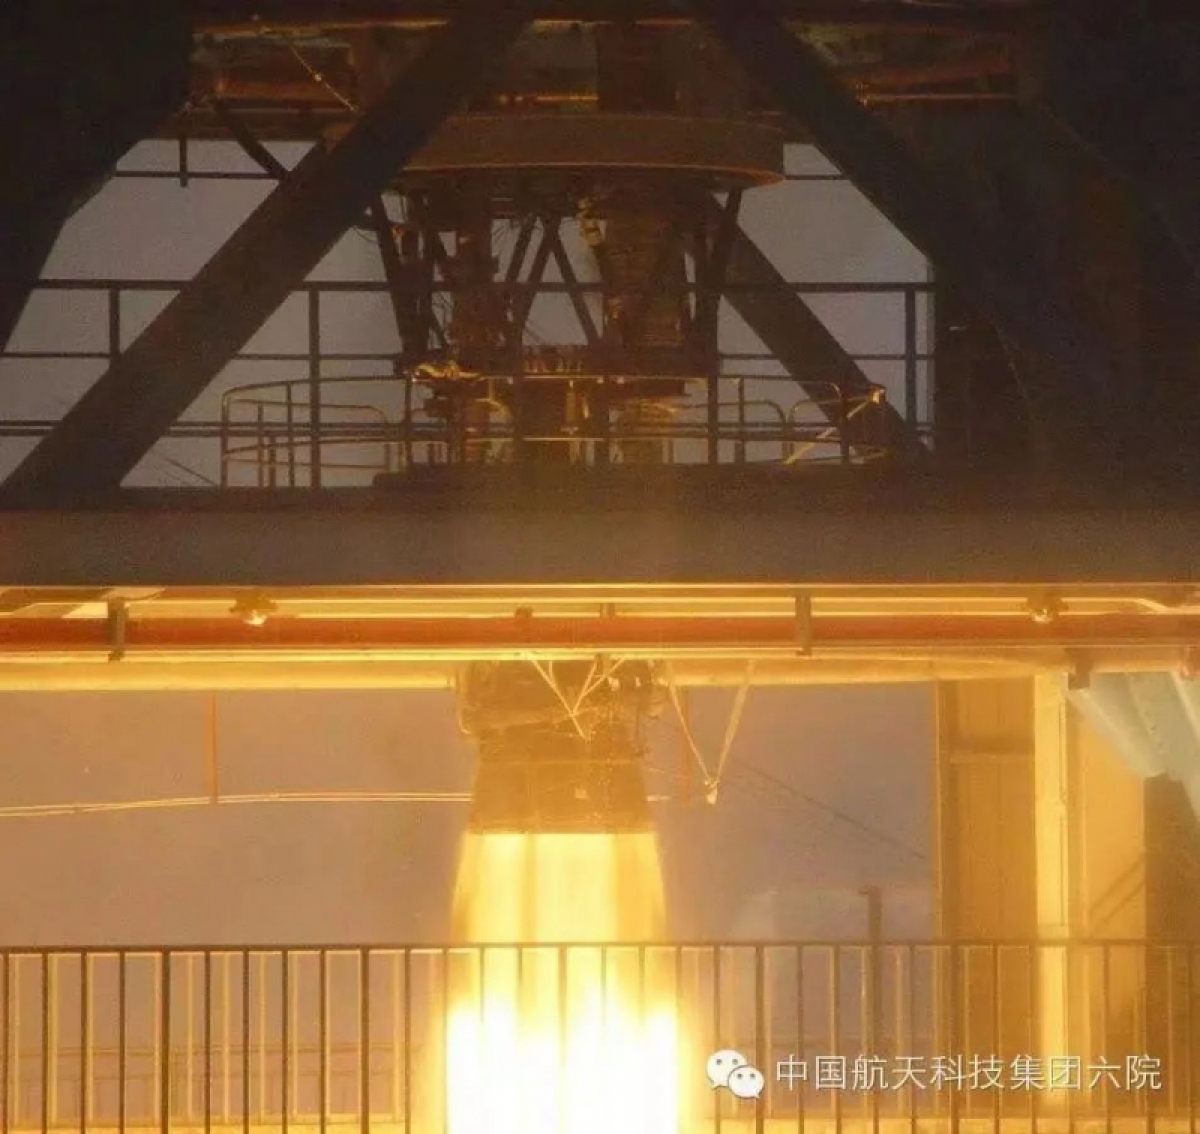 Trung Quốc thực hiện chuyến bay thử nghiệm đầu tiên tái sử dụng động cơ tên lửa - Ảnh 1.